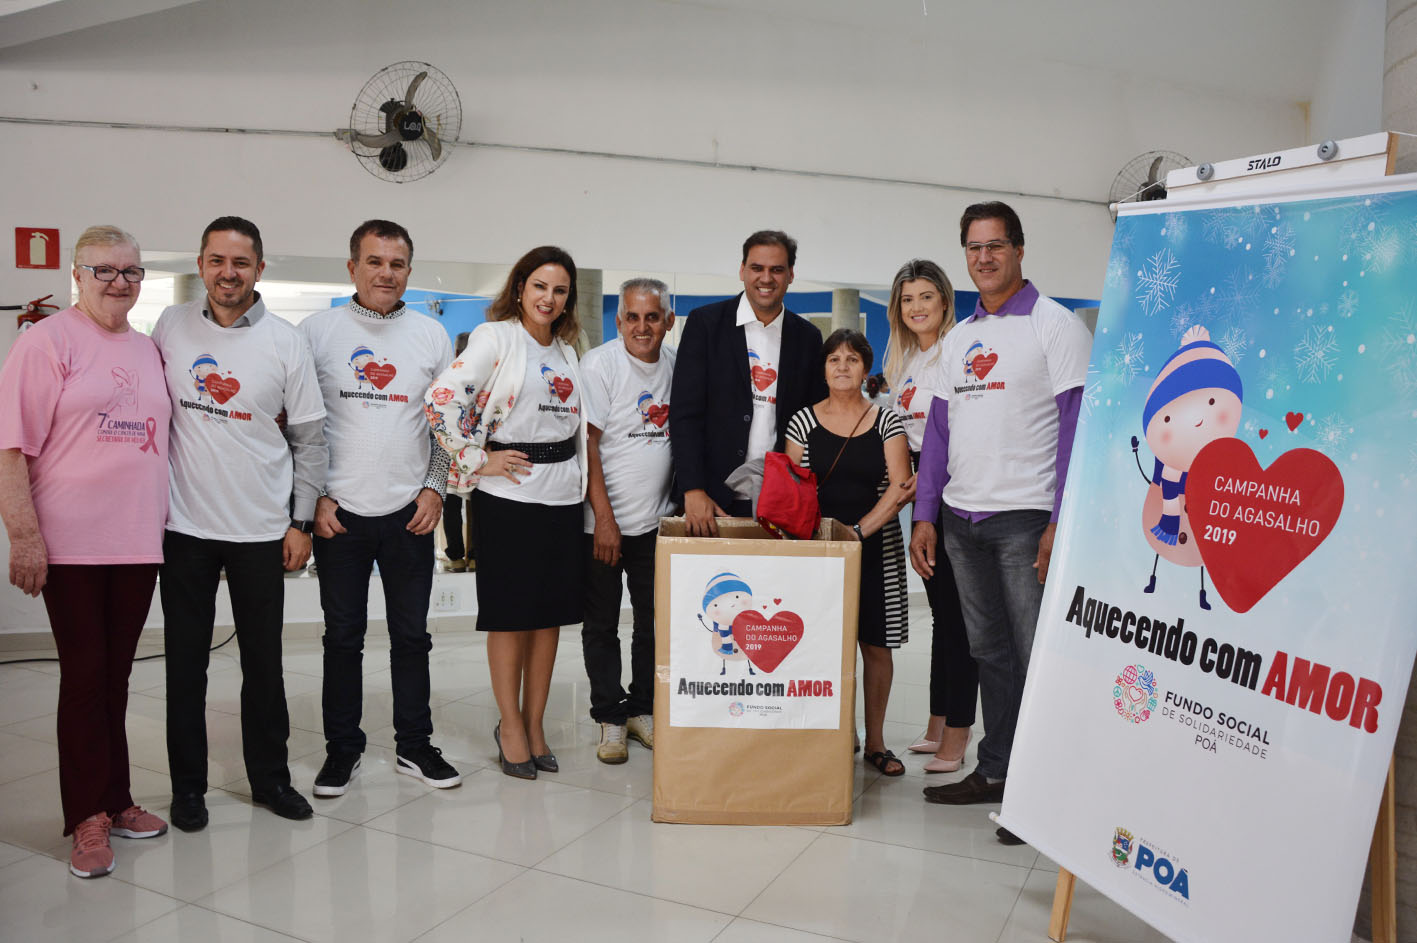 Fundo Social lança Campanha do Agasalho 2019